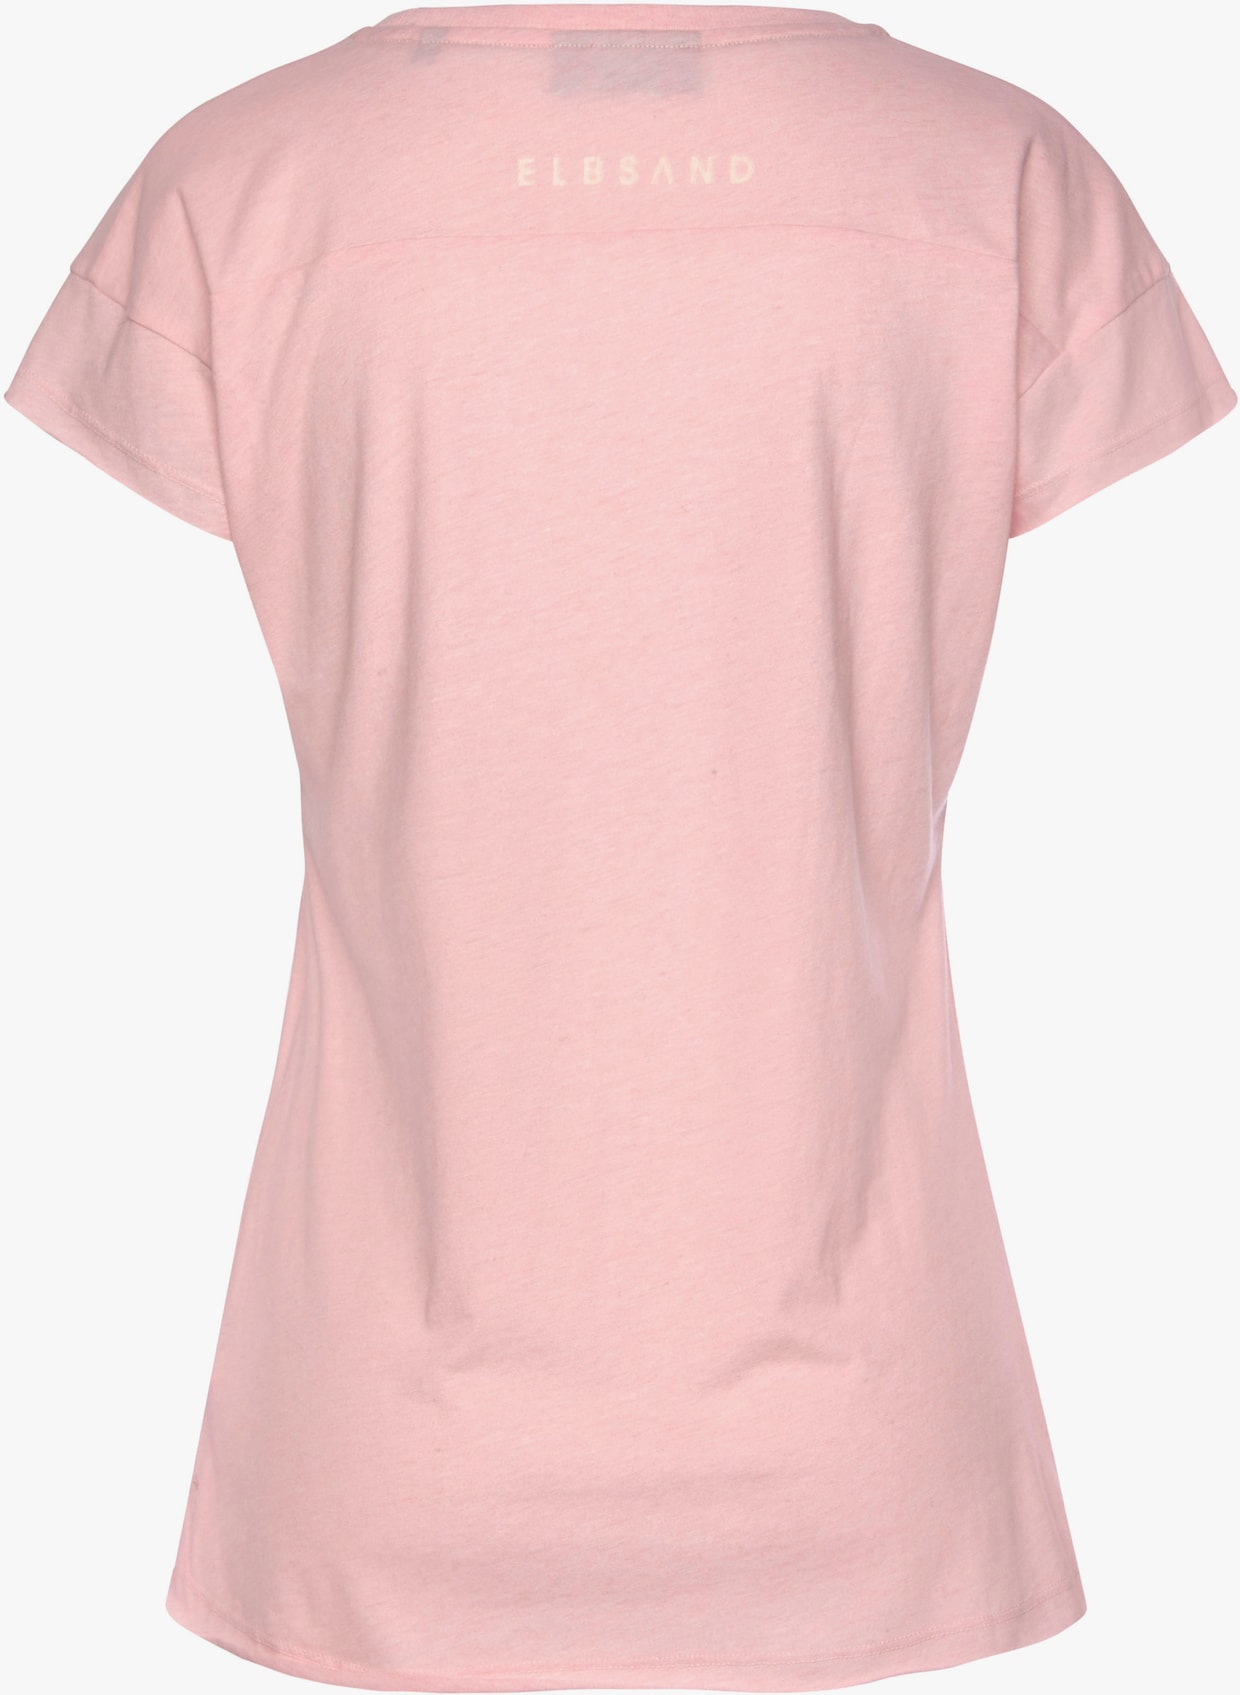 Elbsand T-shirt - roze gemêleerd